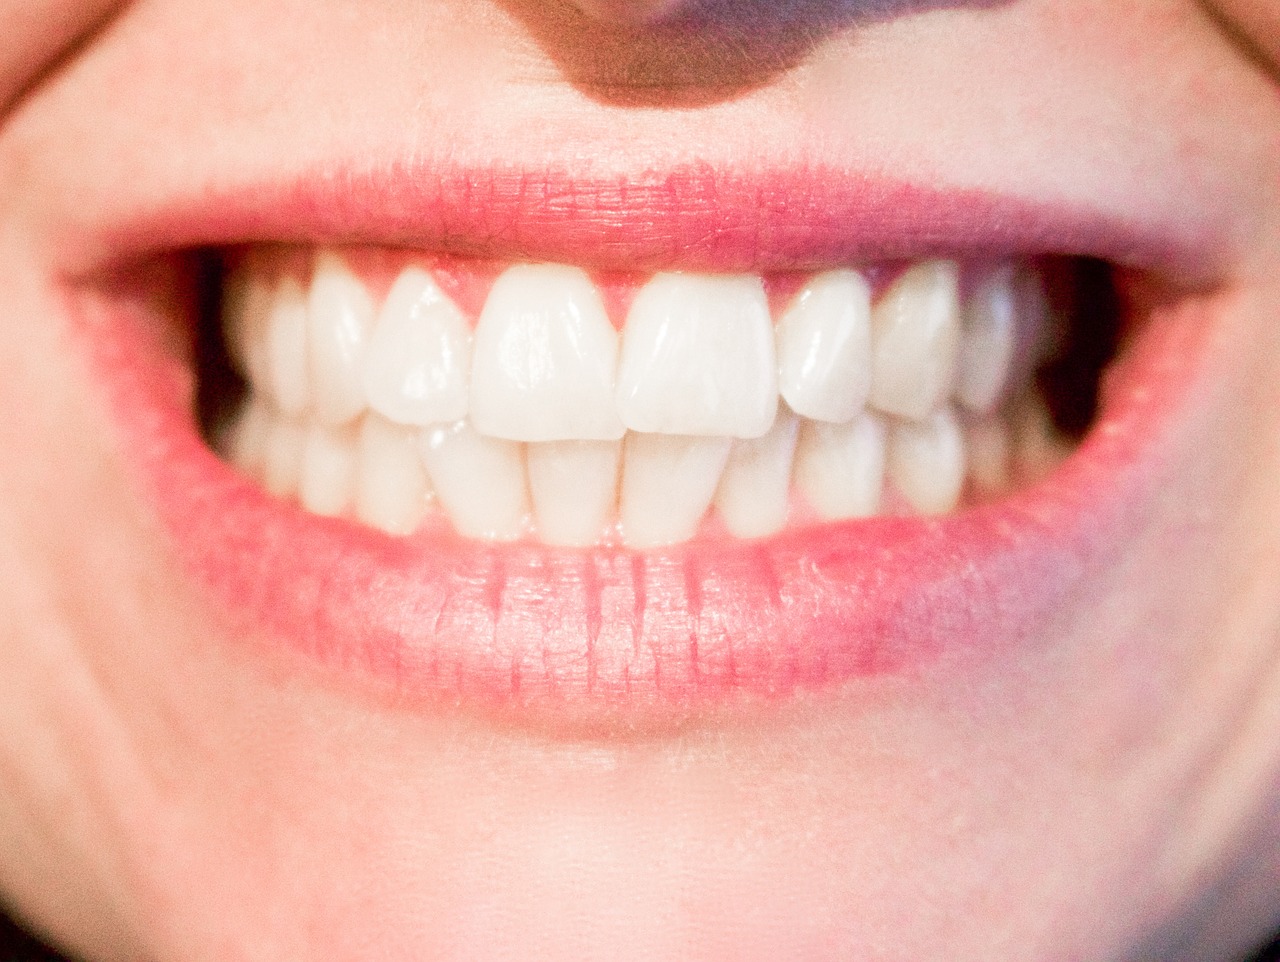 Problemy z zębami mądrości – chirurgiczne usuwanie ósemek. Dentysta w Warszawie